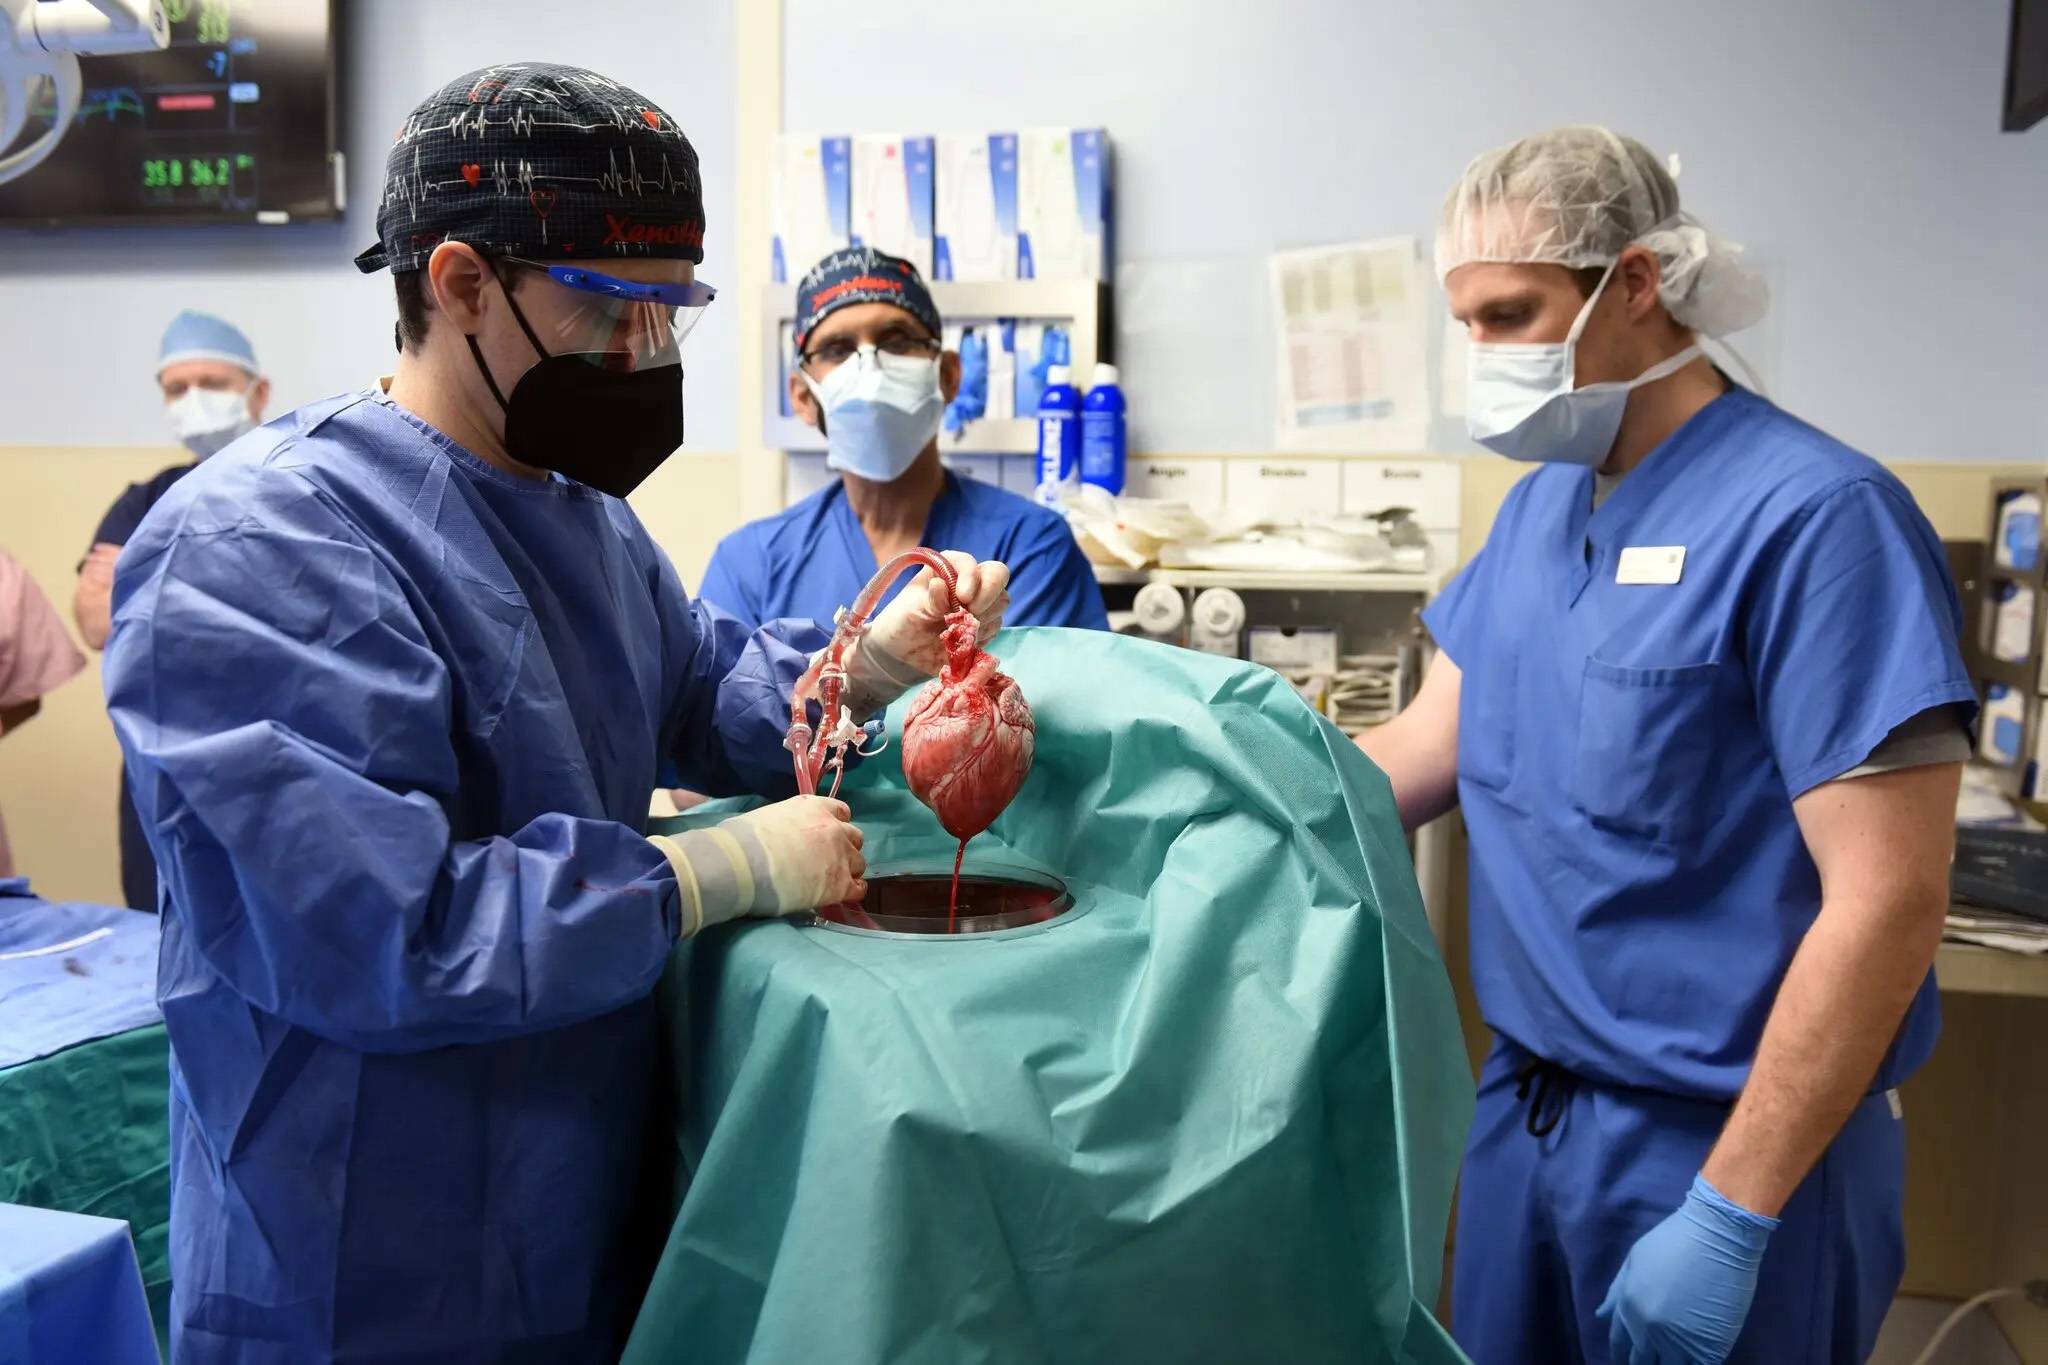 nytimes - Muore il primo paziente al mondo con trapianto di cuore di maiale, grazie per averci fatto vedere la speranza del “cambiamento del cuore di maiale”